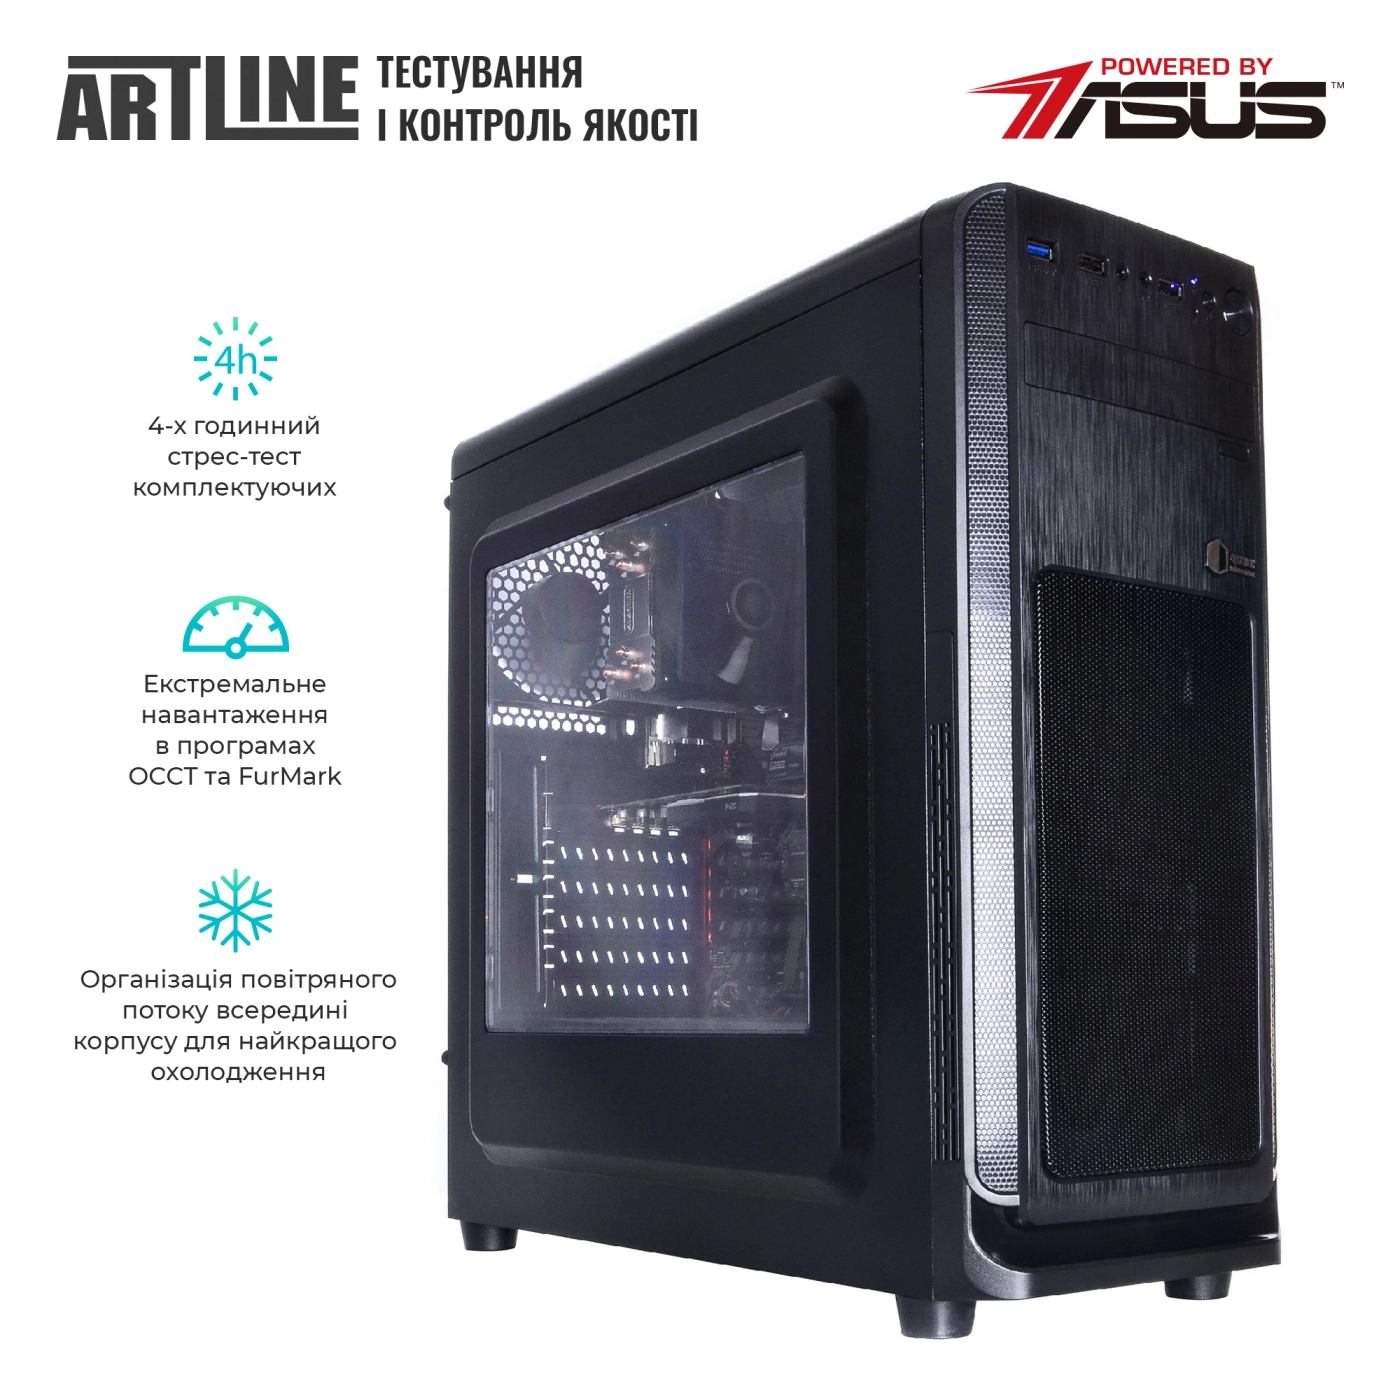 Купить Сервер ARTLINE Business T25v31 - фото 6